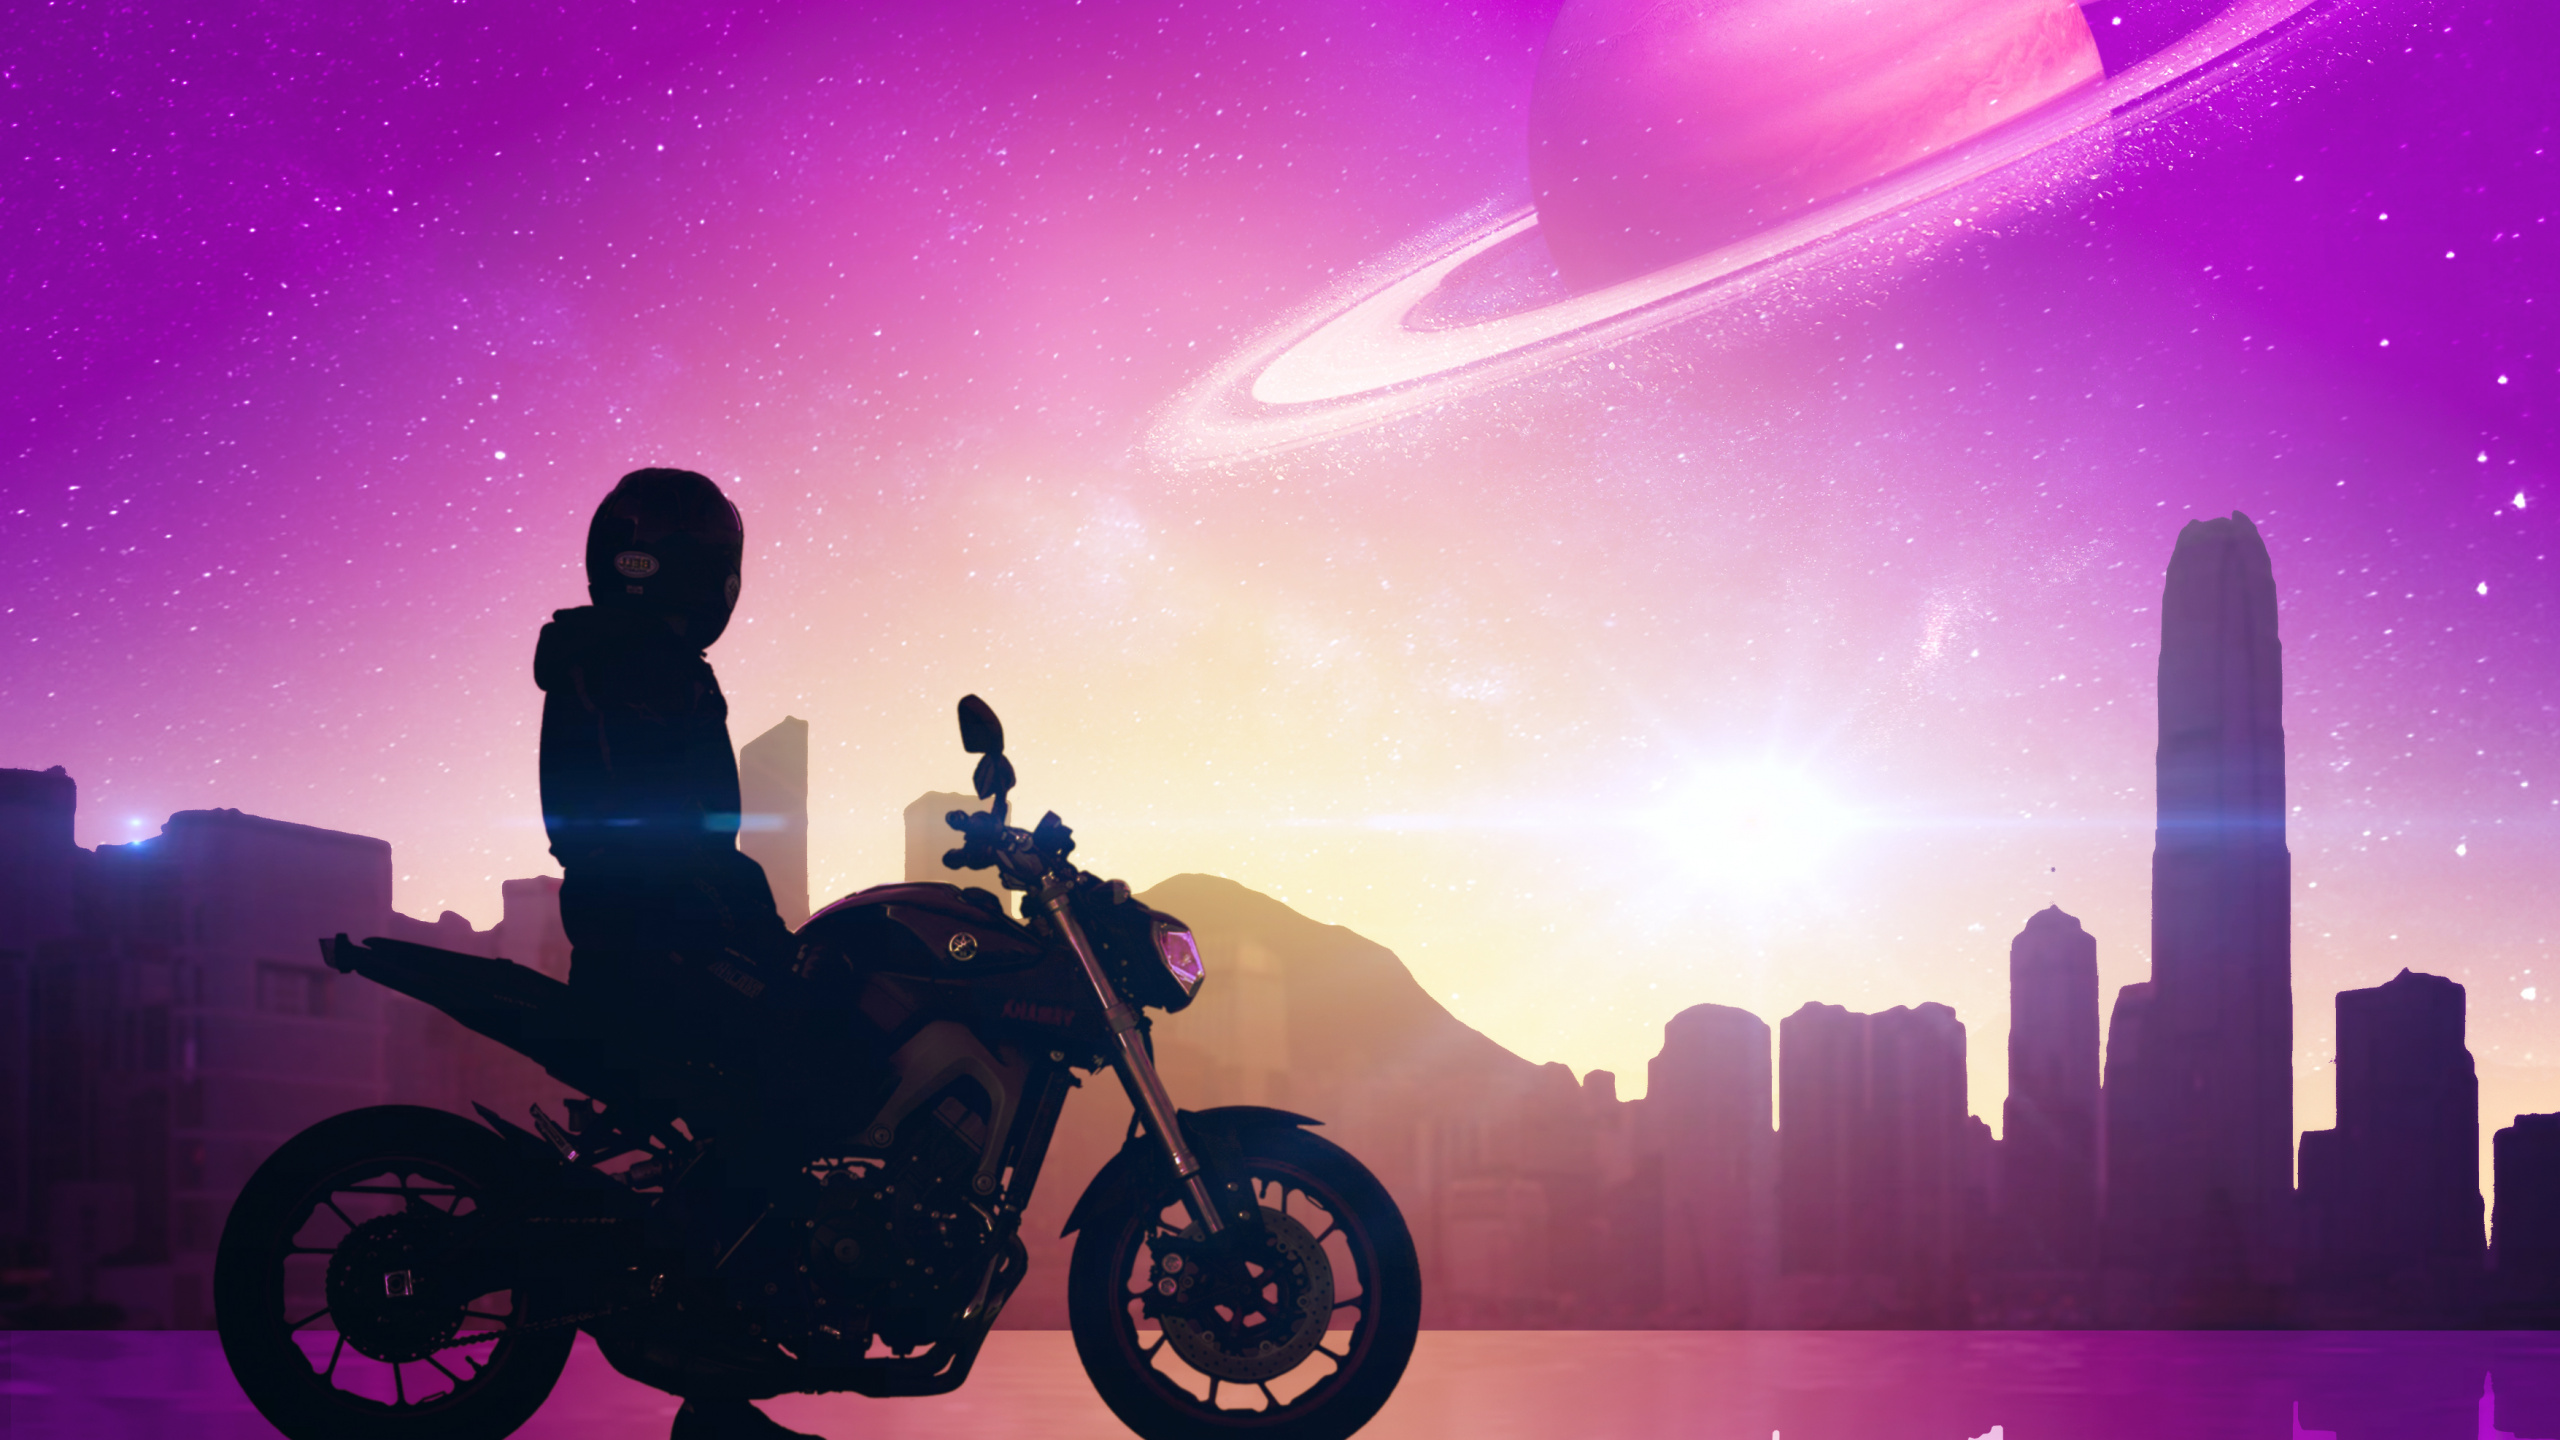 Hombre en Motocicleta Durante la Noche. Wallpaper in 2560x1440 Resolution